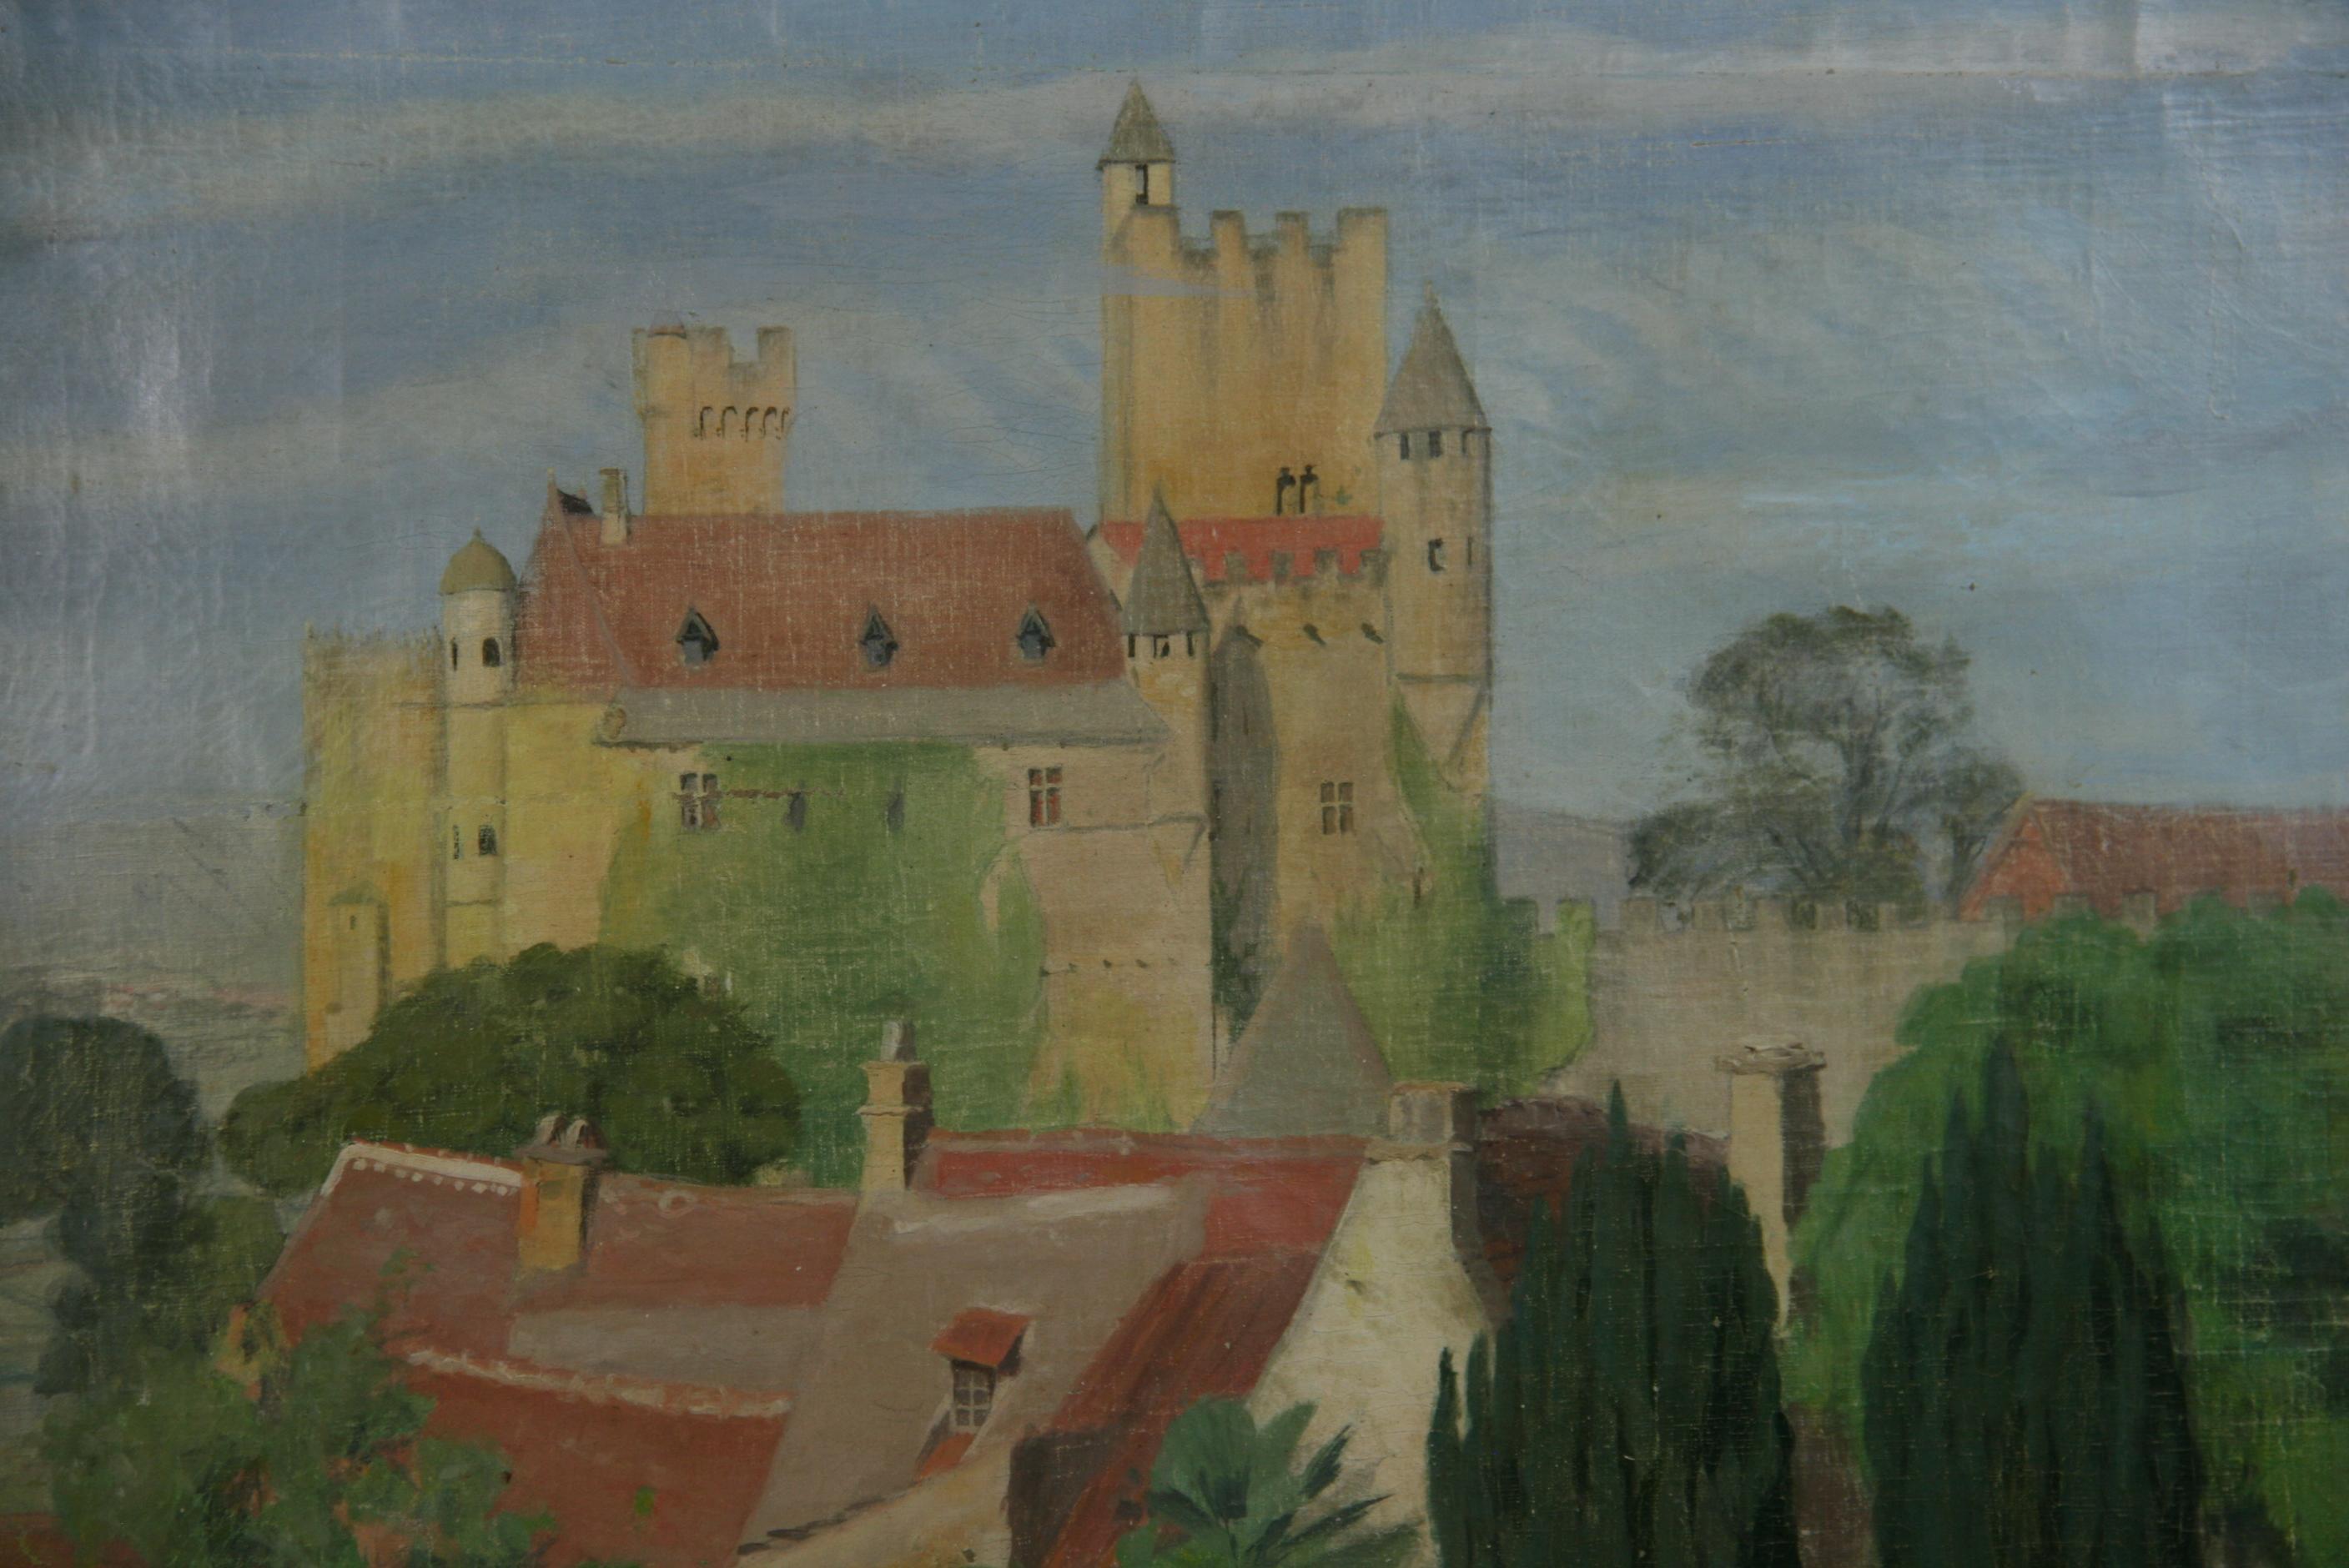 3792 Huile sur toile dans un cadre peint à la main représentant un château français avec des ouvriers dans les champs